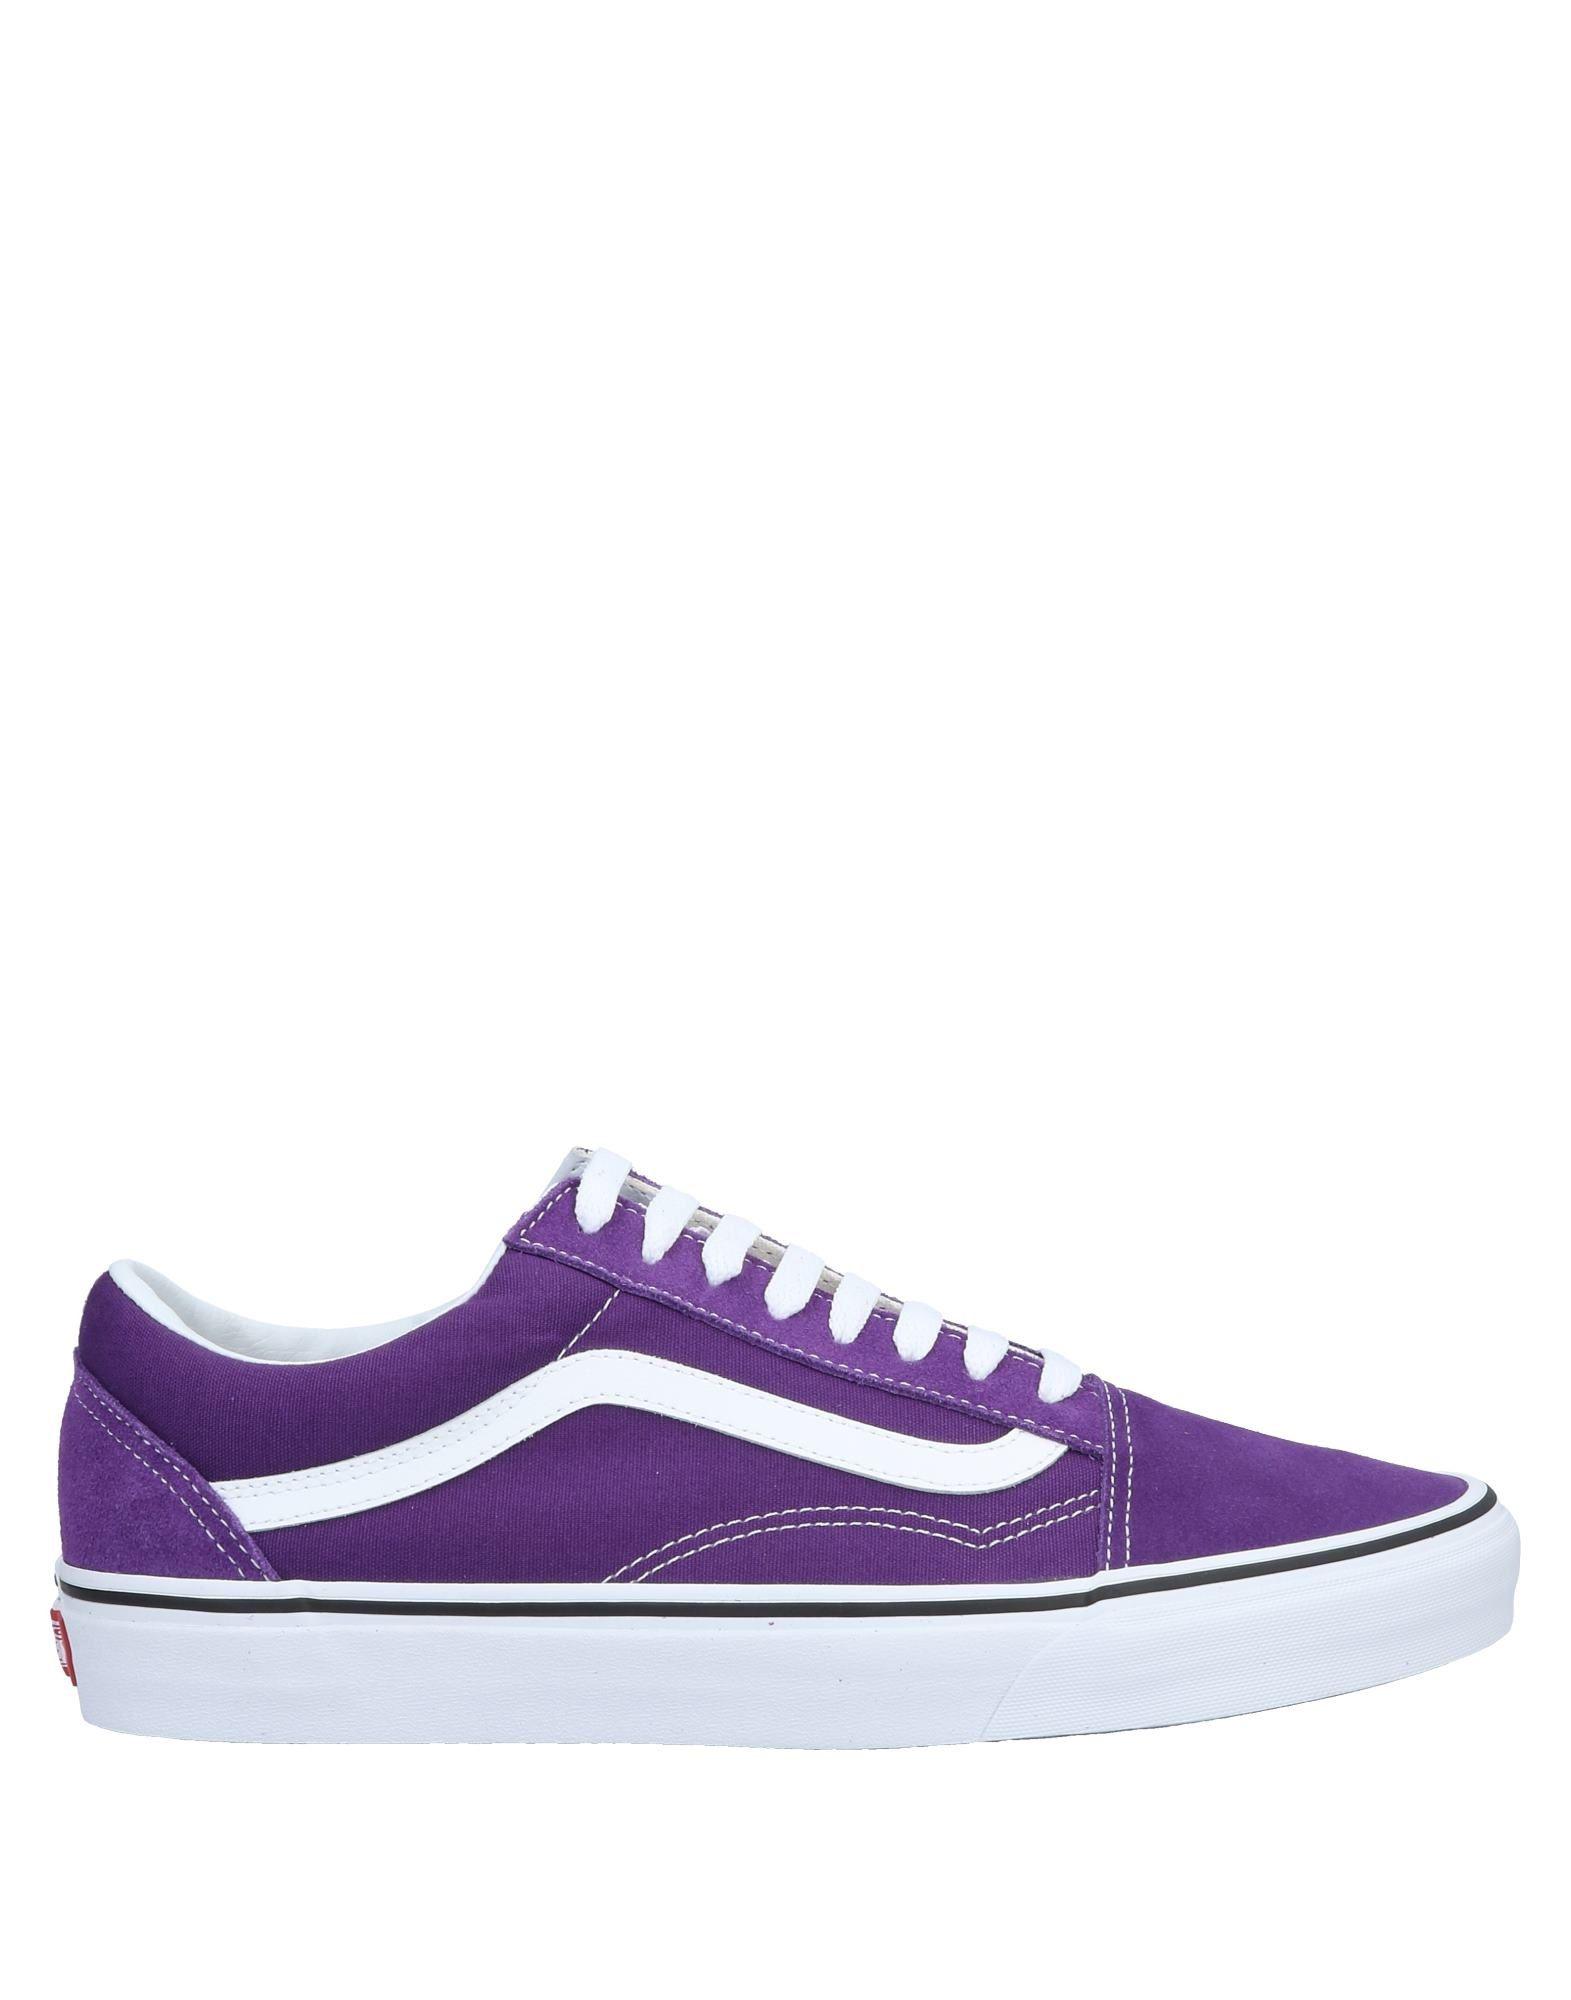 light purple low top vans